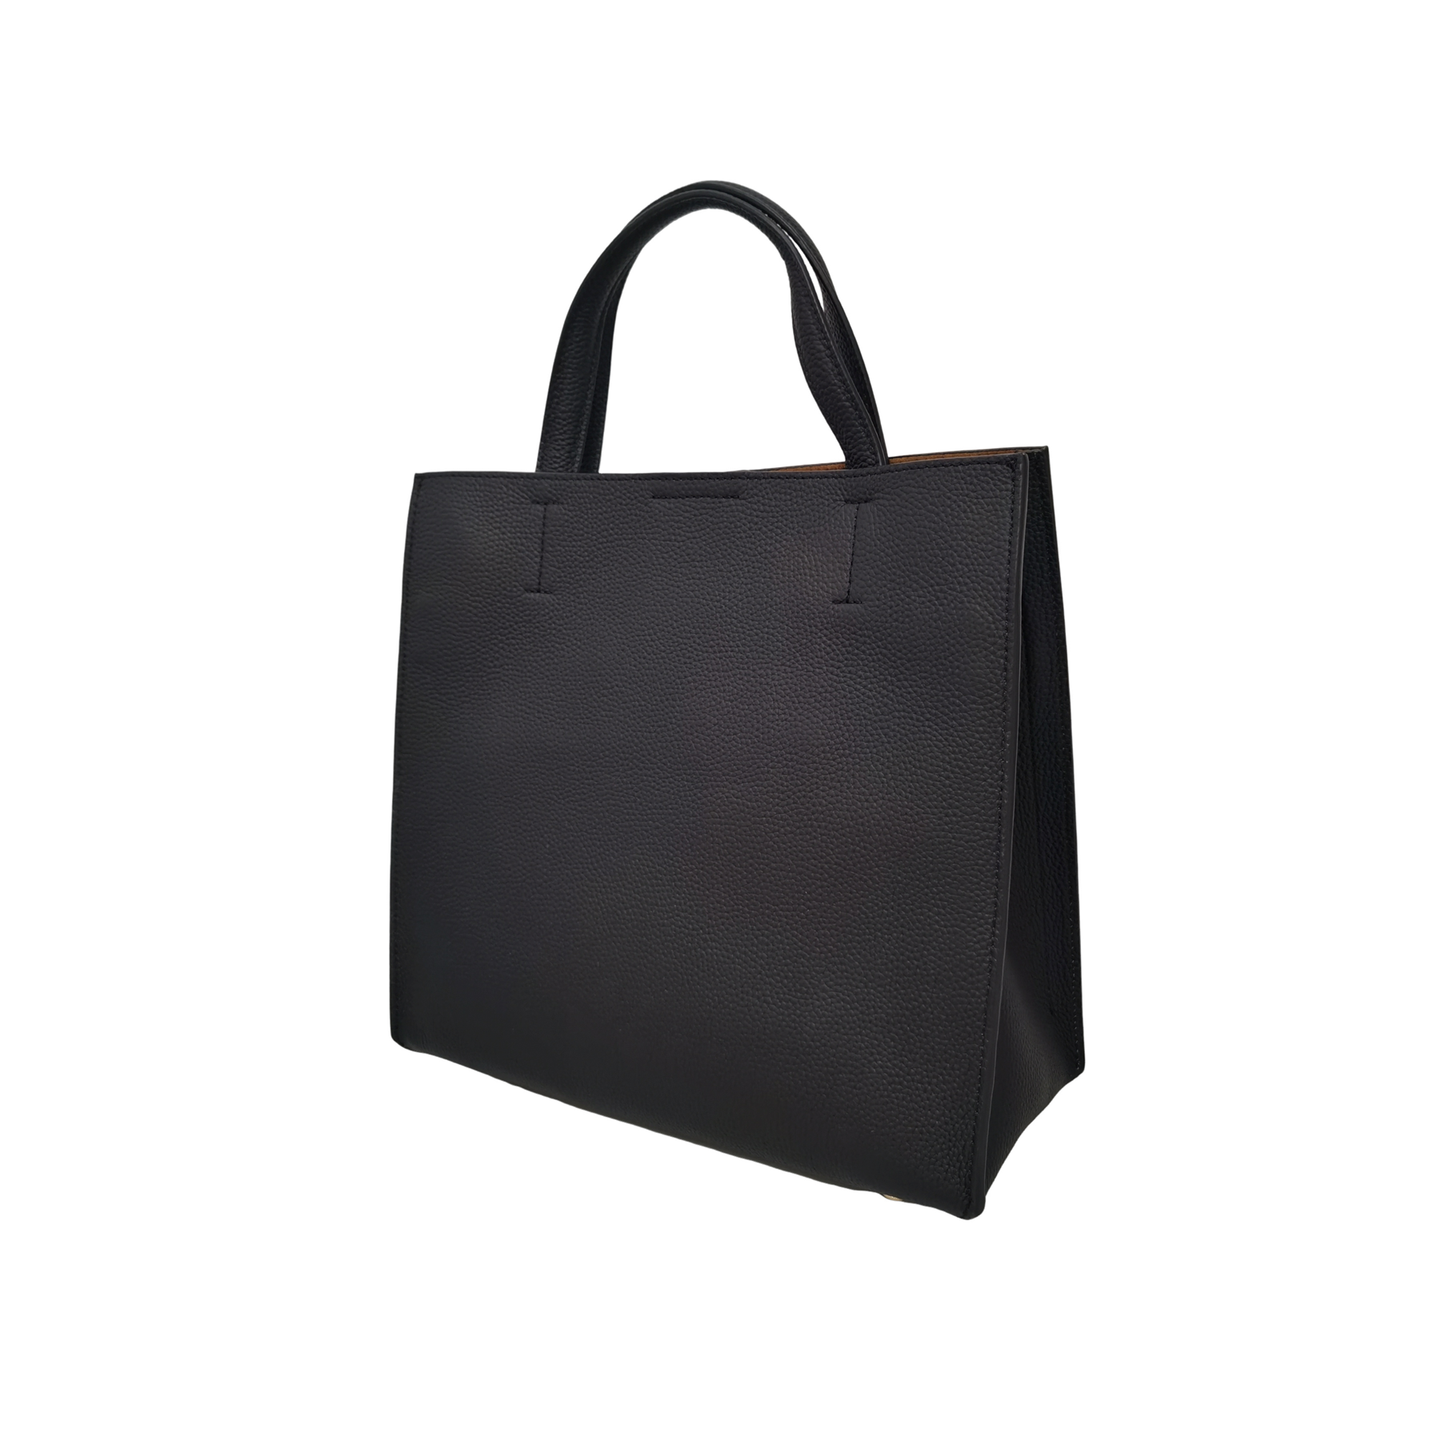 Women's genuine cowhide leather handbag Potter V3 design